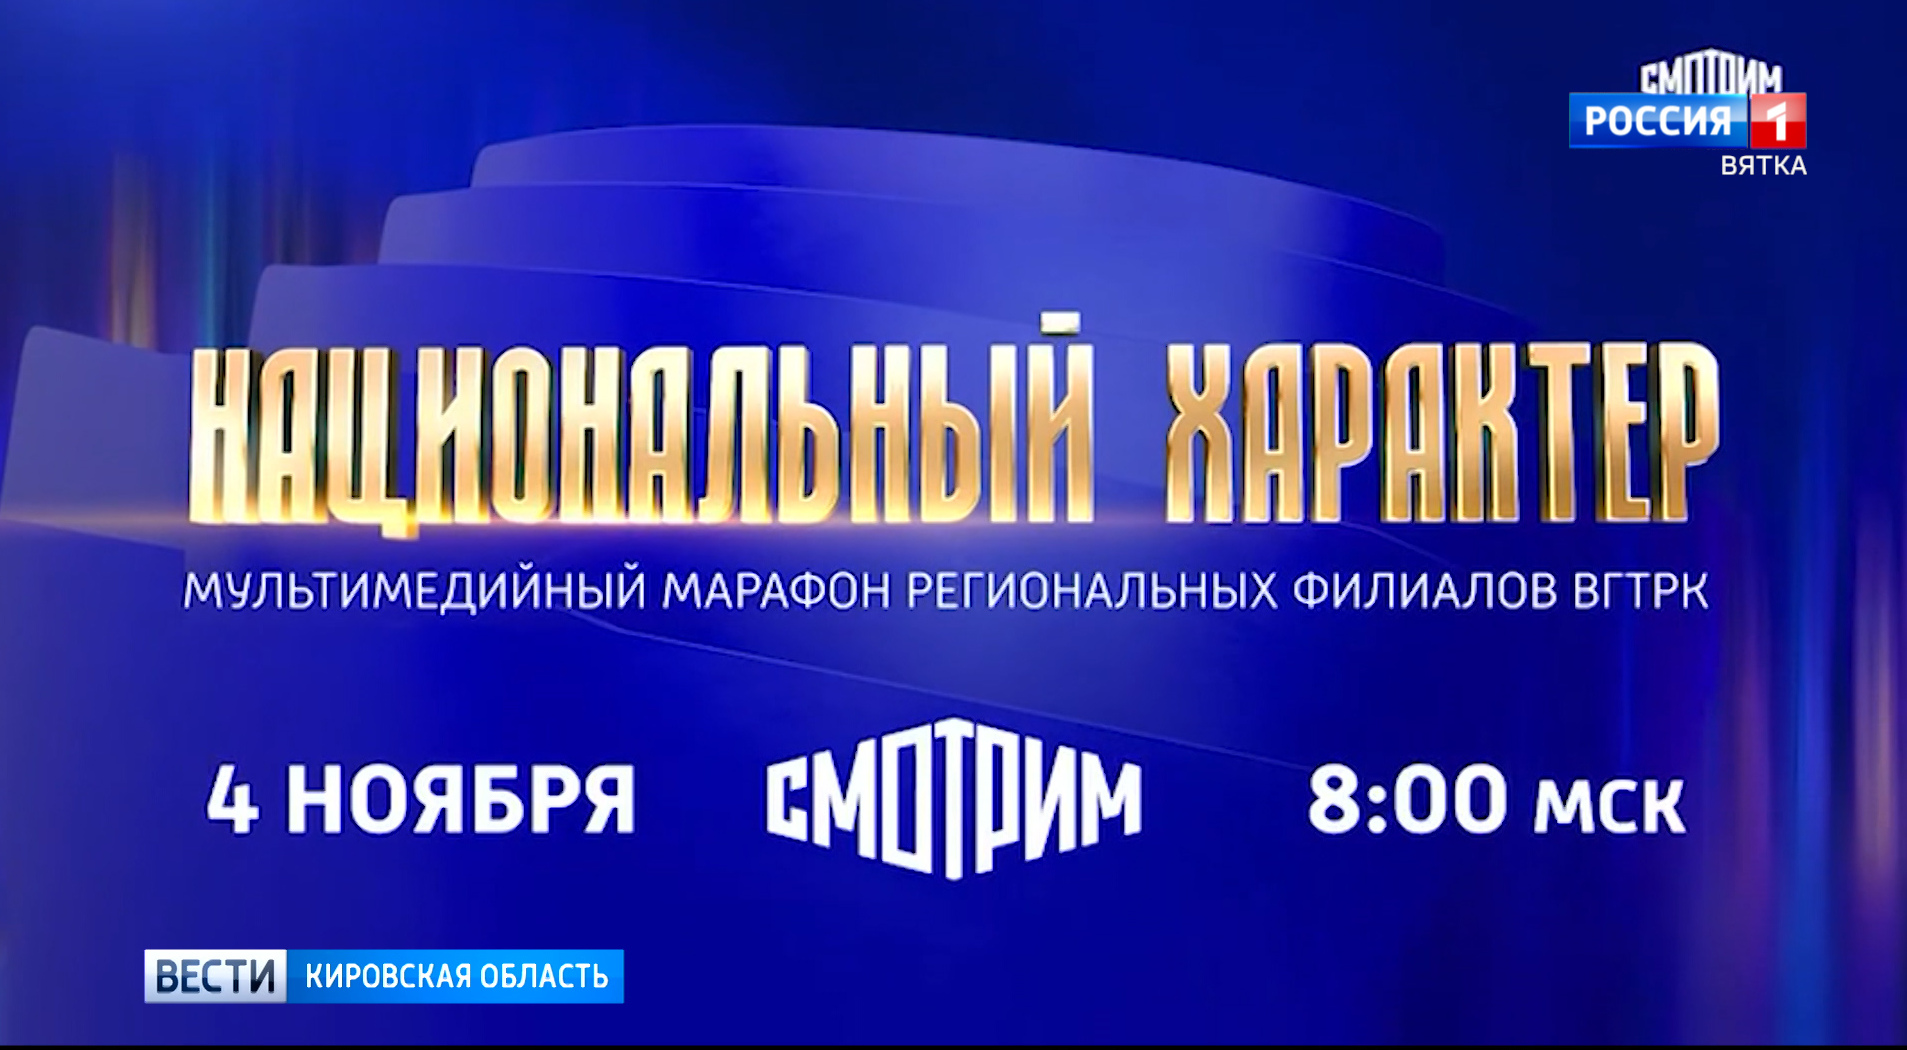 4 ноября стартует Всероссийский мультимедийный марафон «Национальный характер»